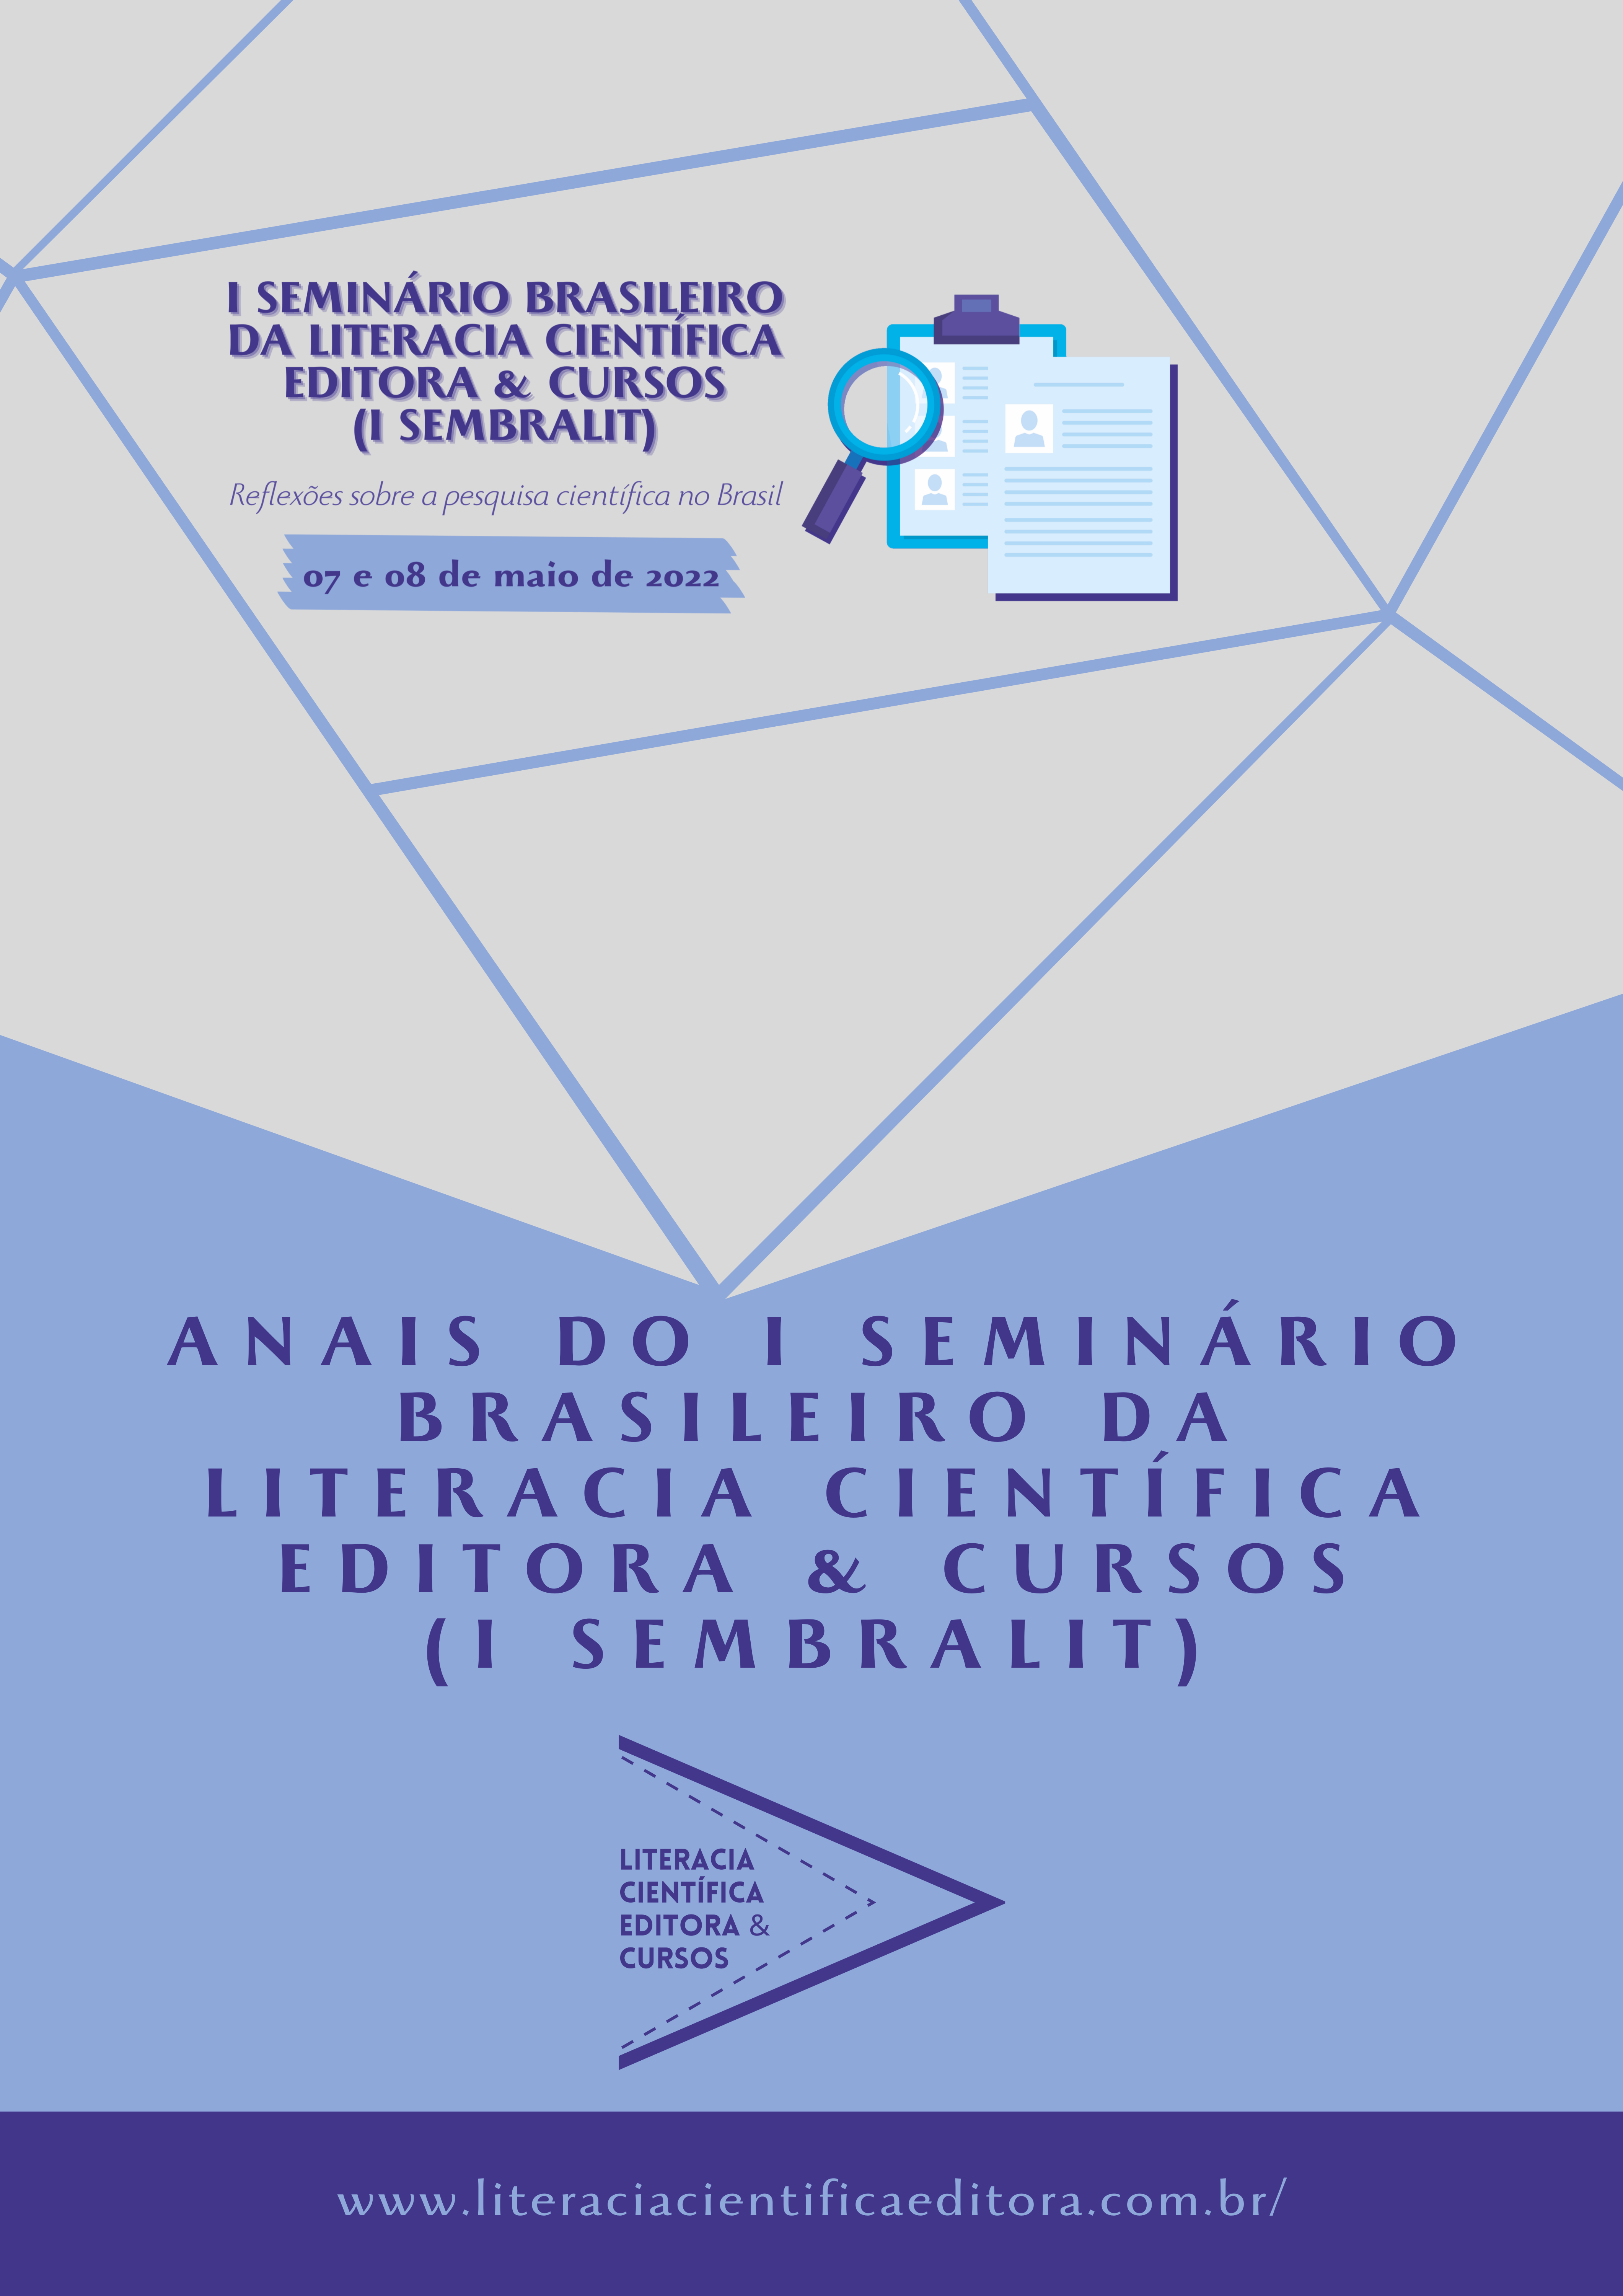 ANAIS DO I SEMINÁRIO BRASILEIRO DA LITERACIA CIENTÍFICA EDITORA & CURSOS (I SEMBRALIT)